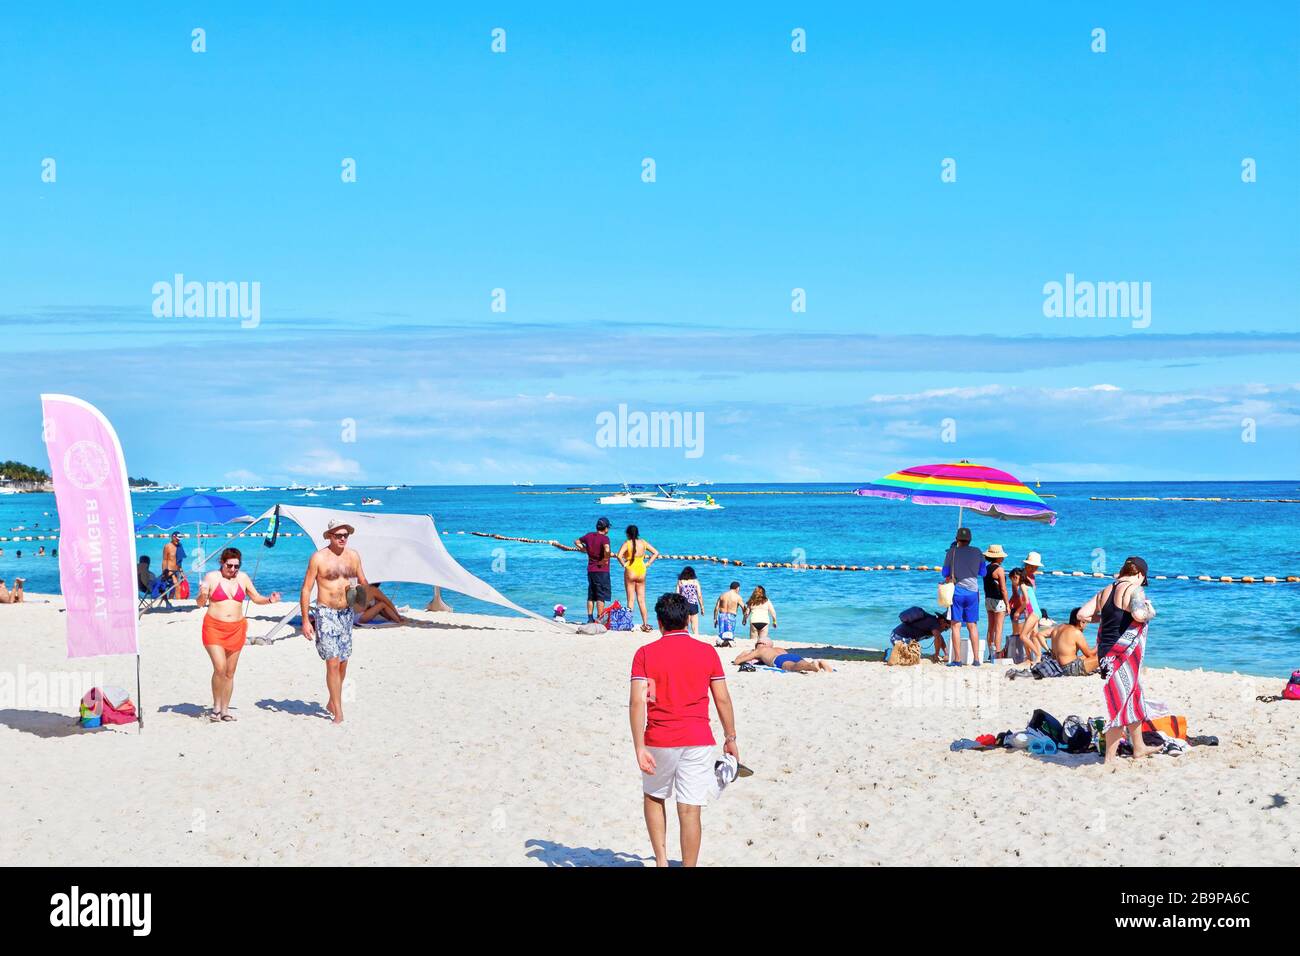 Playa del Carmen, Mexique - 26 décembre 2019: Plage bondée remplie de personnes jouant et bronzer à Playa del Carmen sur la Riviera Maya sur les Caraïbes Banque D'Images